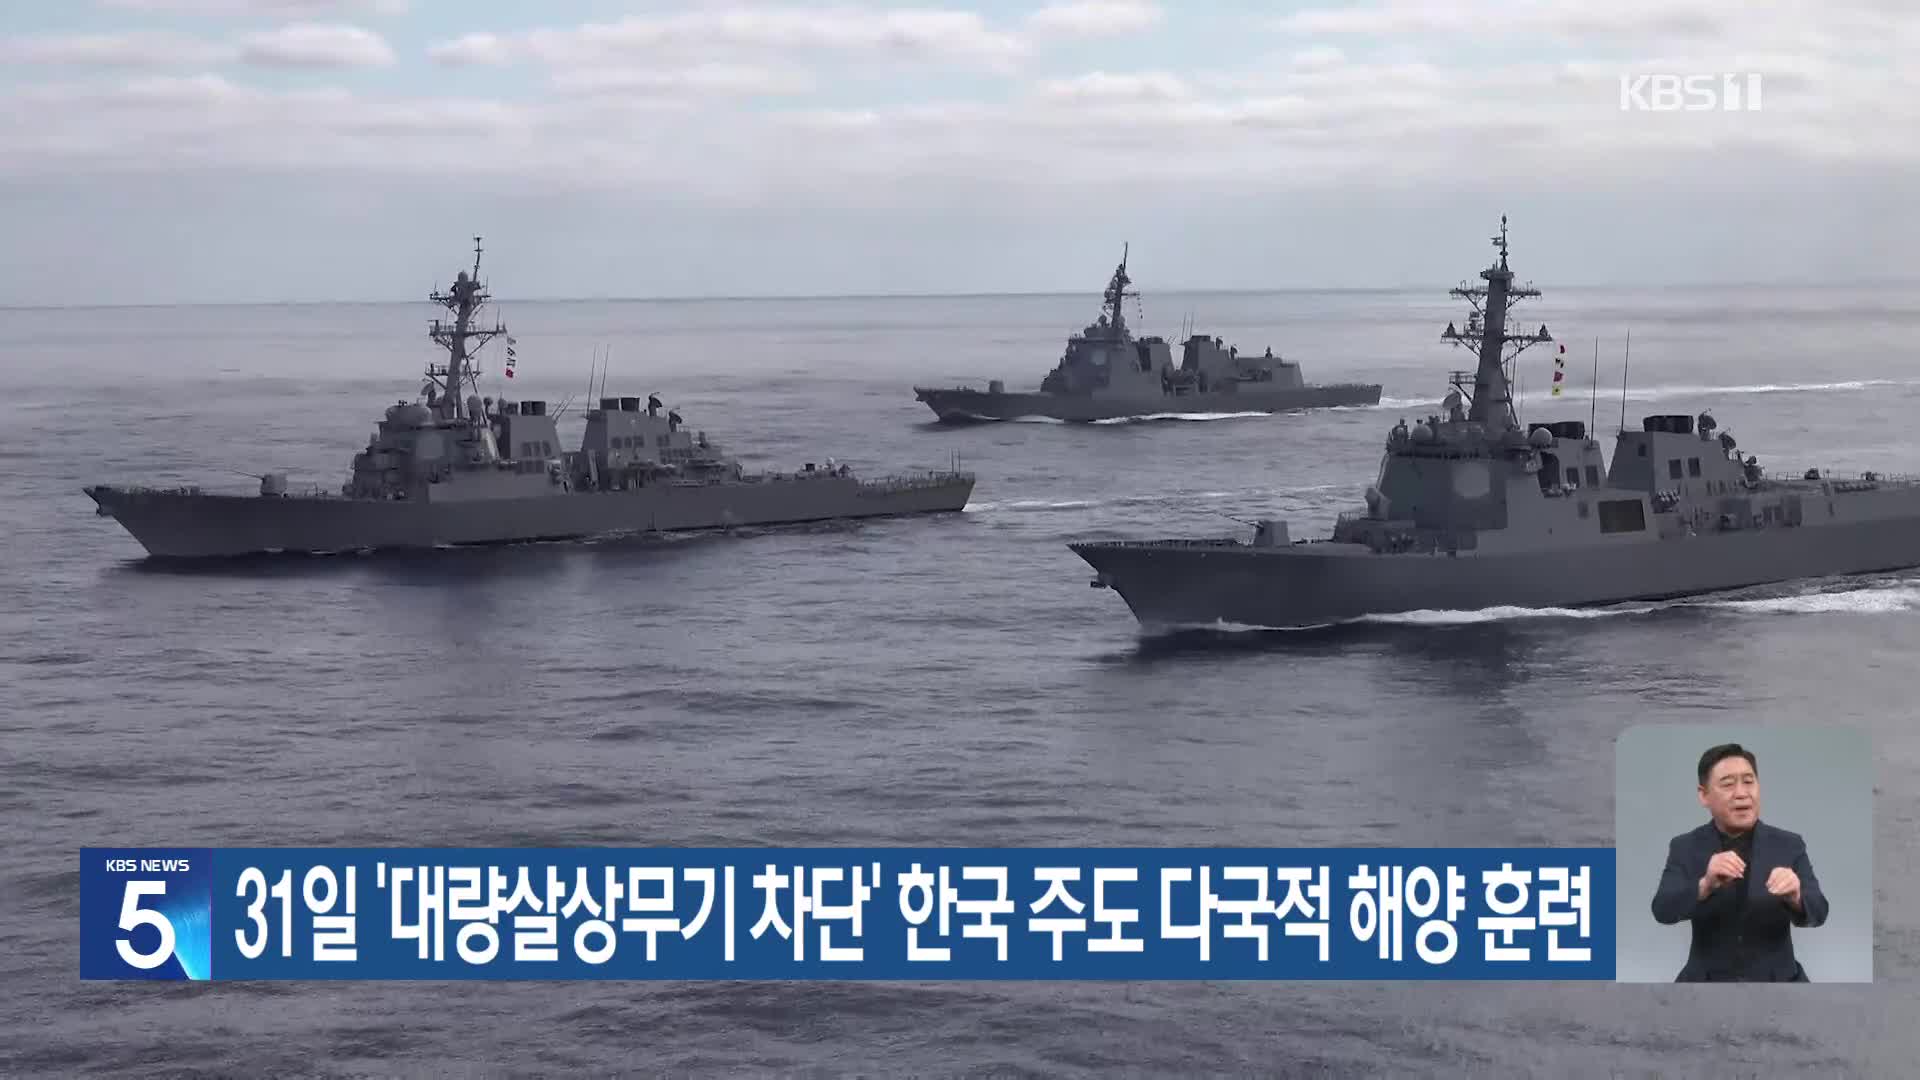 31일 ‘대량살상무기 차단’ 한국 주도 다국적 해양 훈련